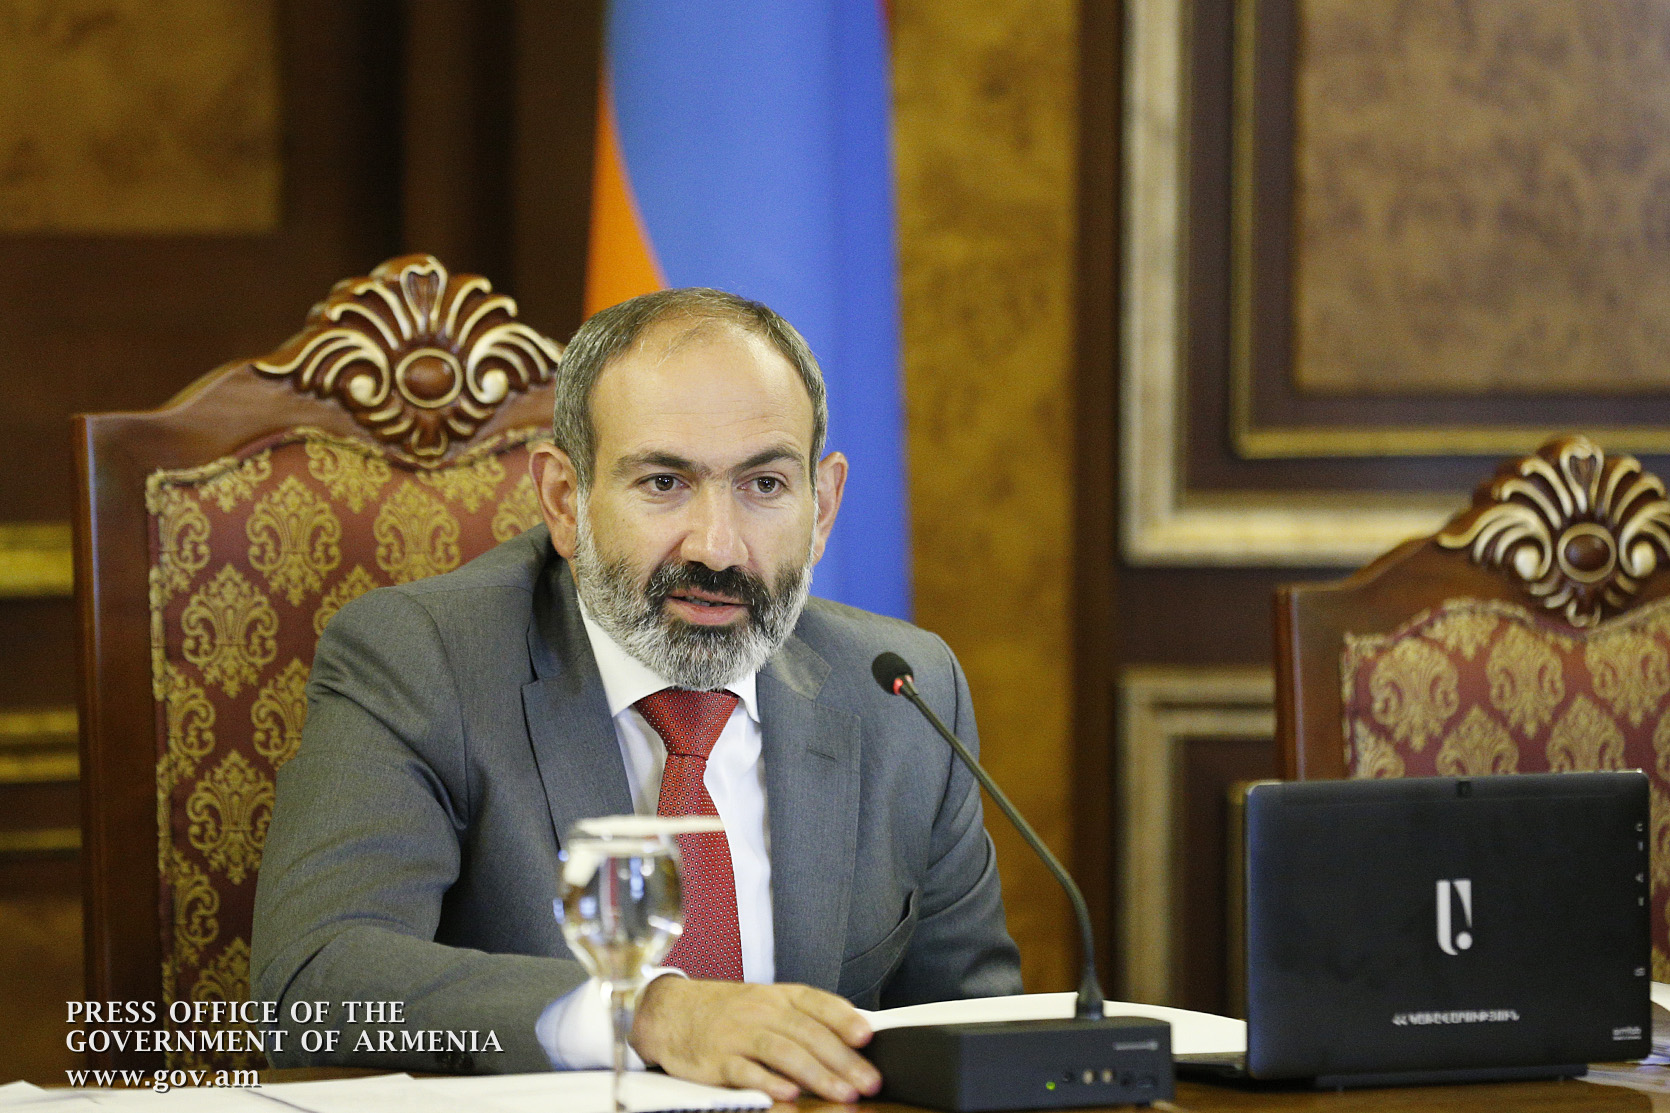 Правительство Армении отдало предпочтение компьютерной технике армянского производства